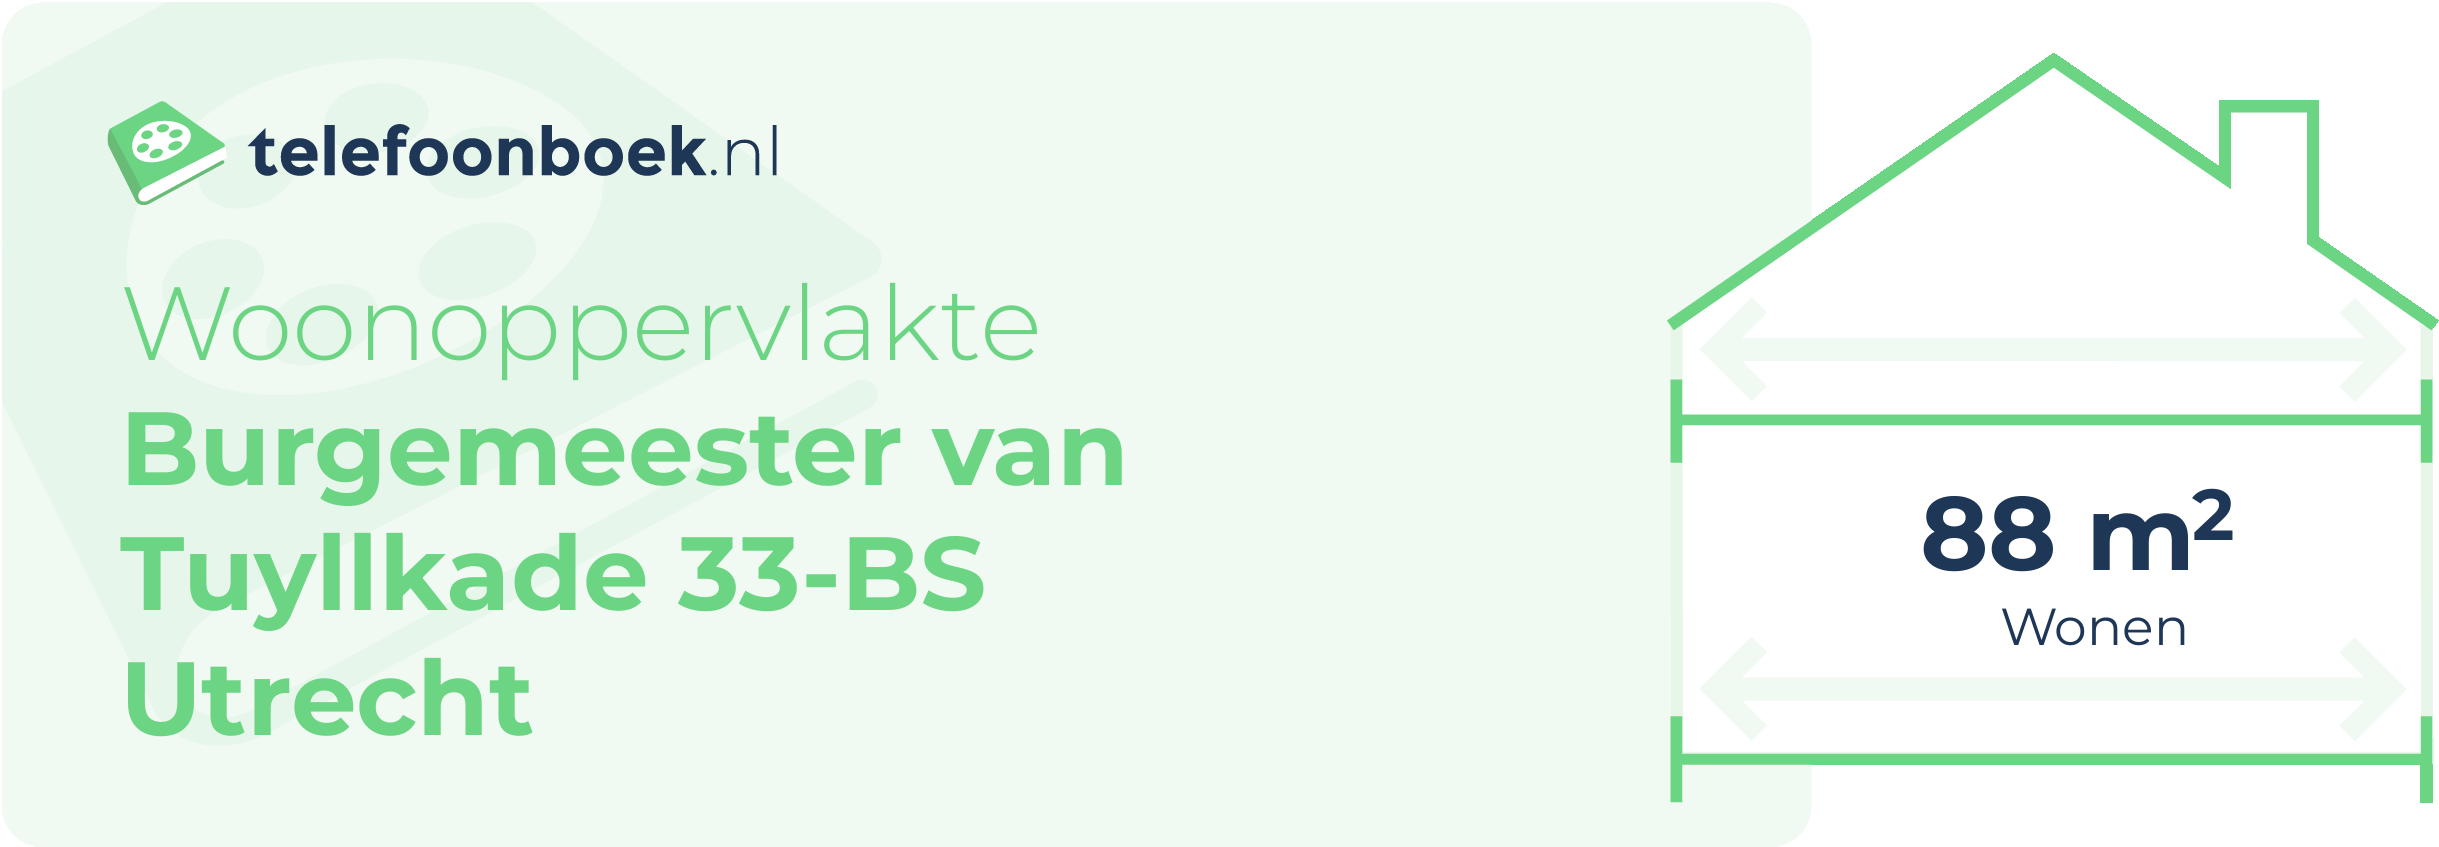 Woonoppervlakte Burgemeester Van Tuyllkade 33-BS Utrecht